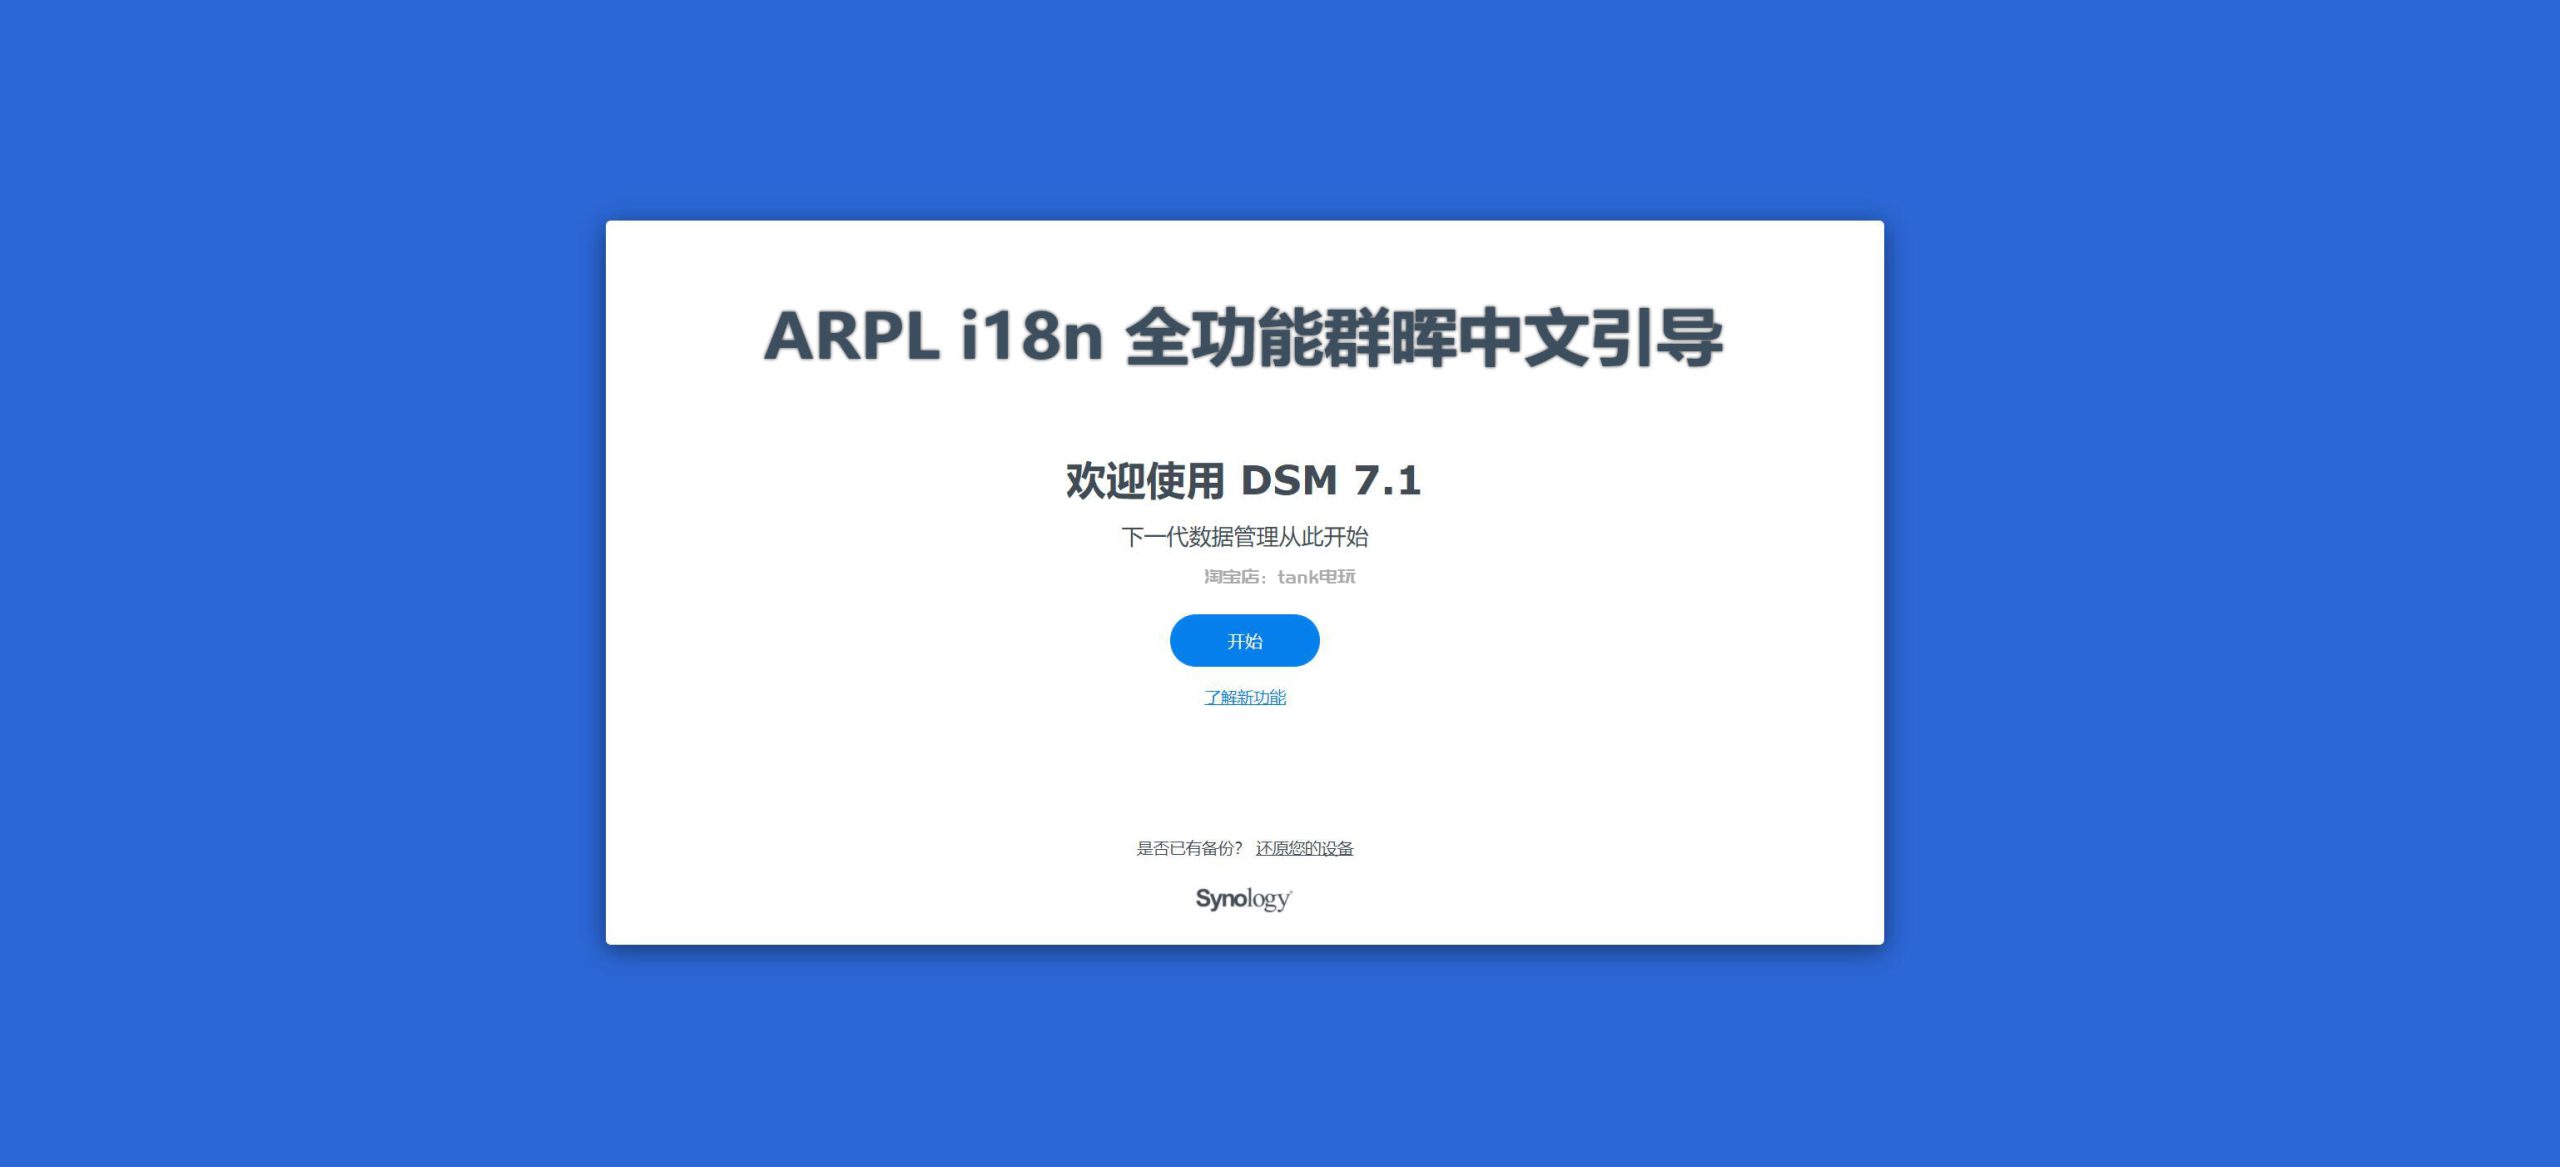 arpl i18n 群晖中文引导说明书缩略图